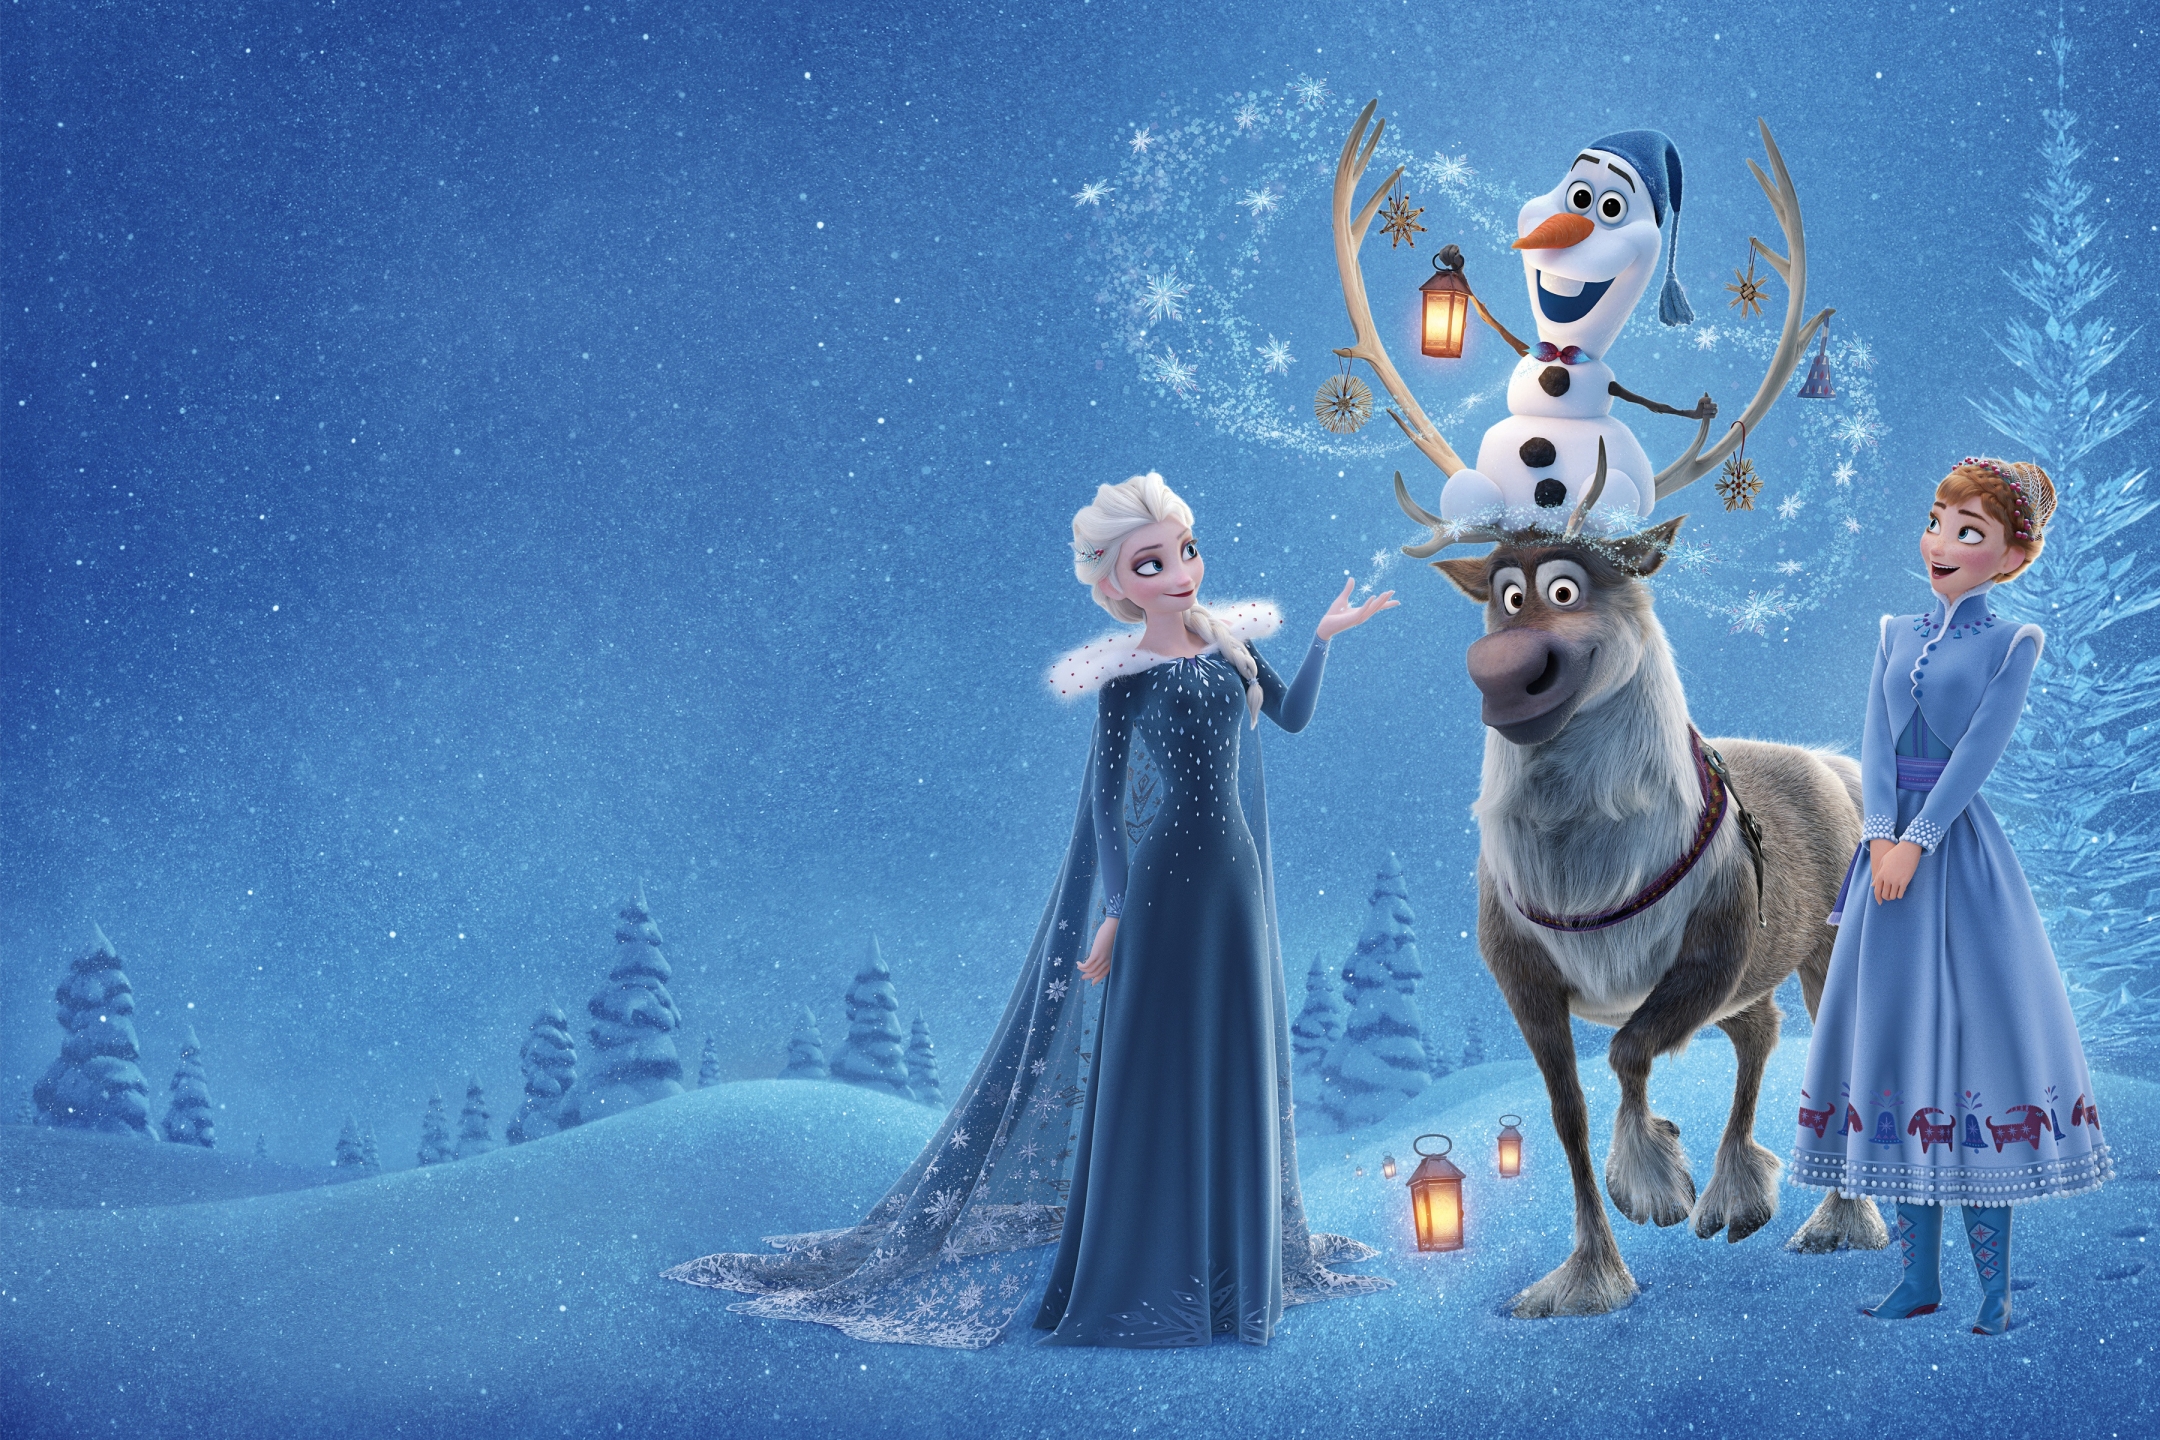 Descarga gratuita de fondo de pantalla para móvil de Películas, Frozen: El Reino Del Hielo, Congelado (Película), Ana (Congelada), Elsa (Congelada), Olaf (Congelado), Sven (Congelado).